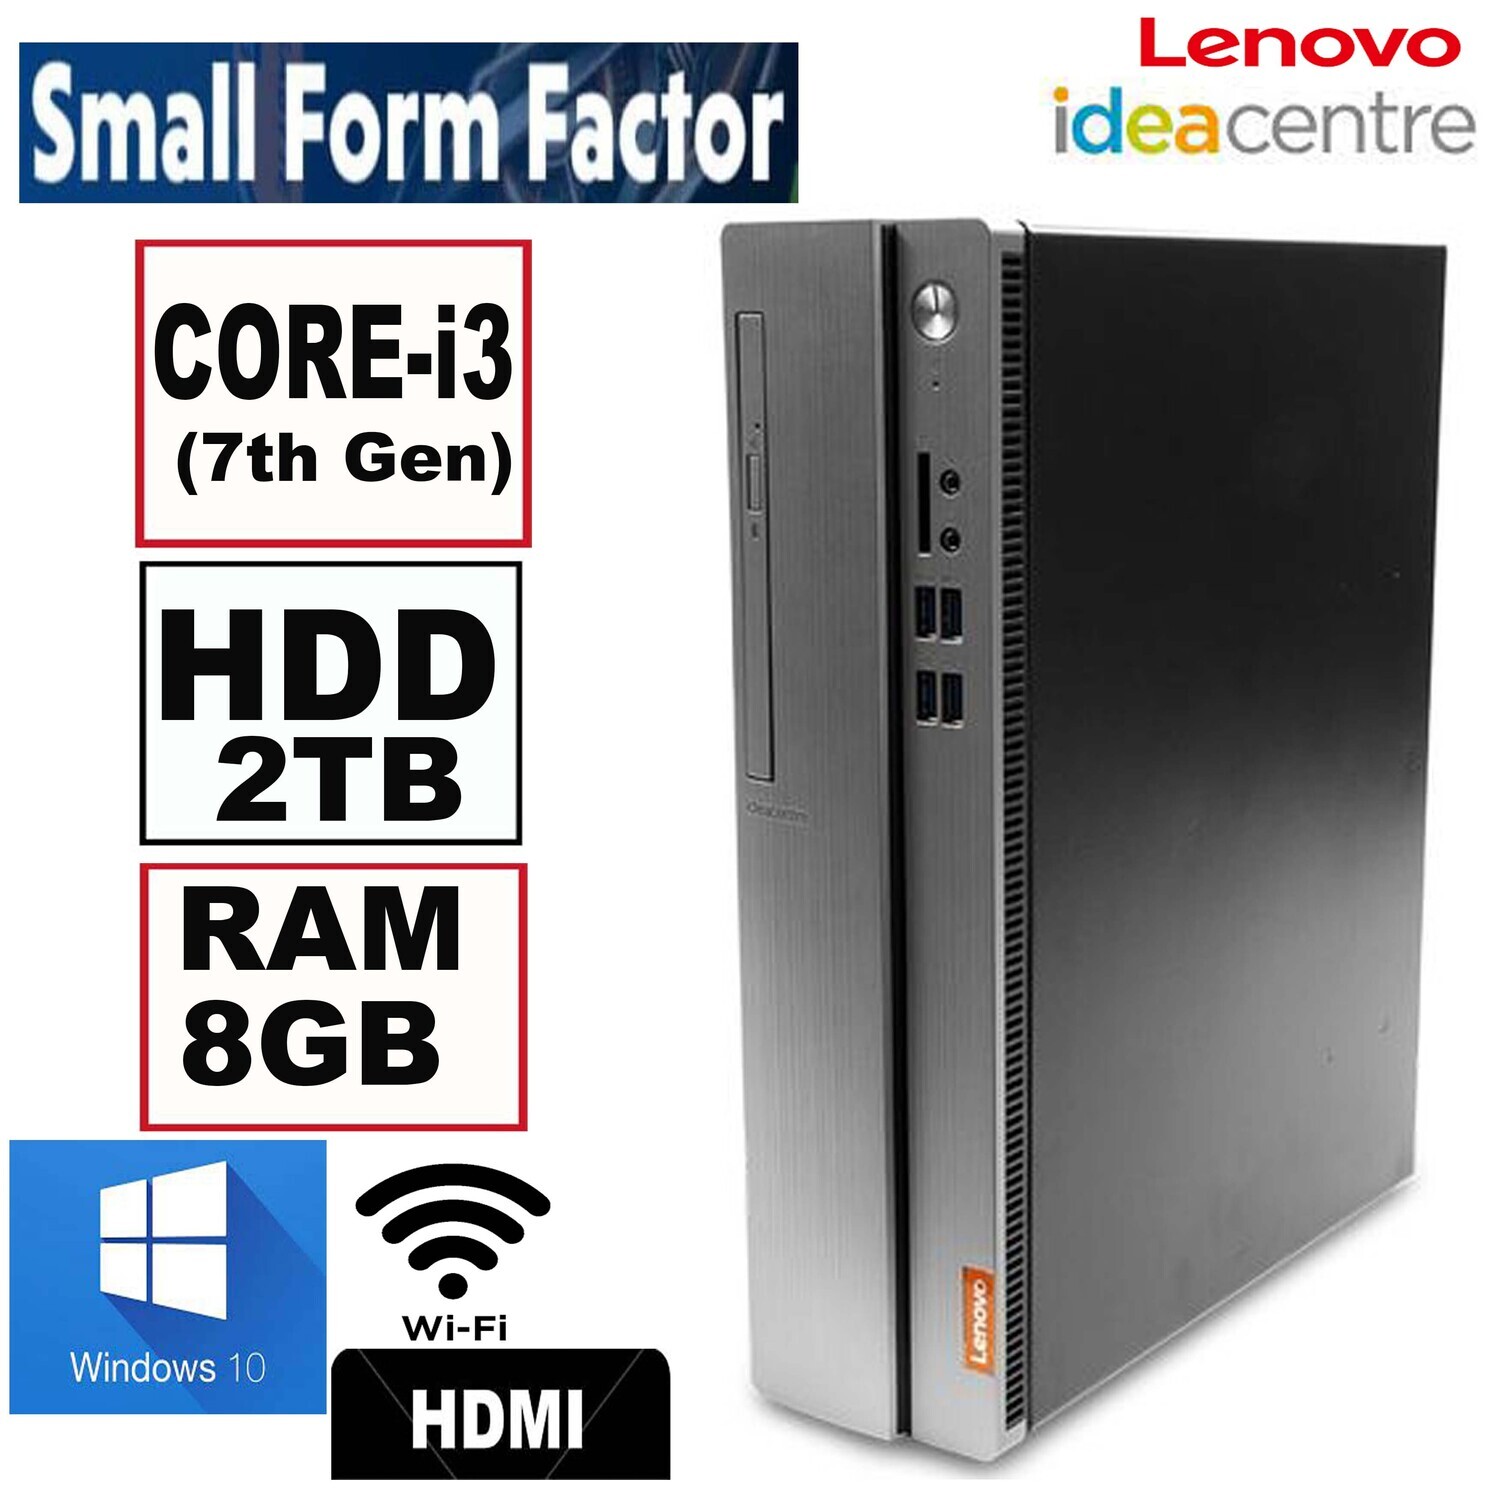 Lenovo IdeaCentre 510s SFF Desktop PC i3-7100 2.4GHz 8GB 2 TB HDD HDMI WiFi Win10